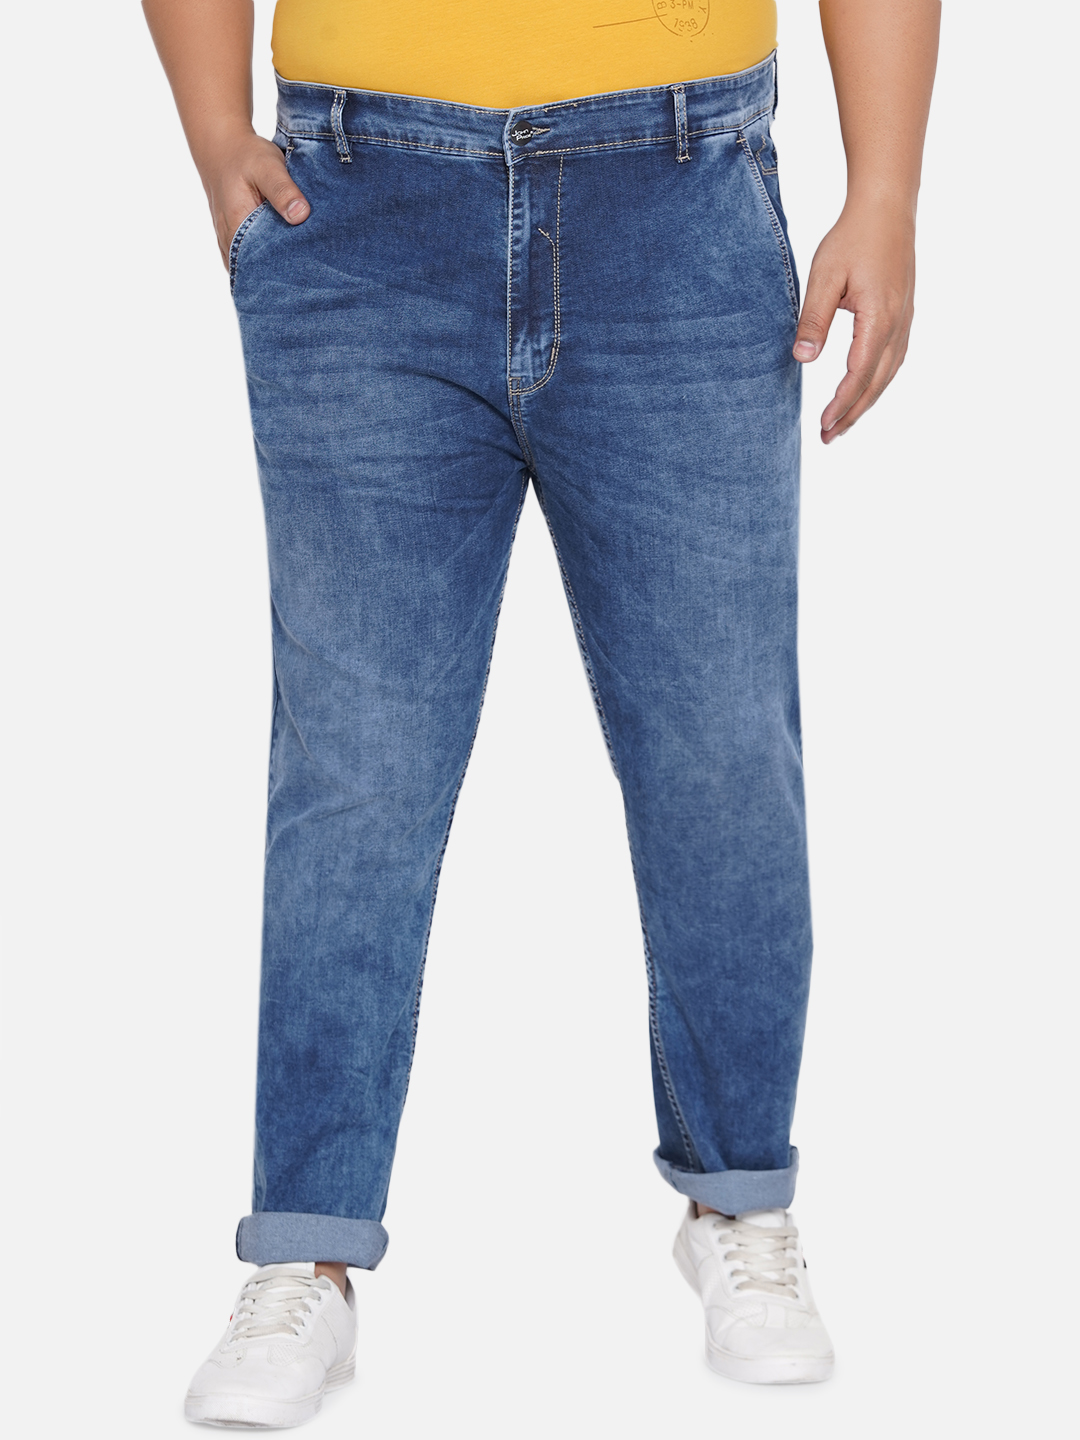 bottomwear/jeans/EJPJ25021/ejpj25021-2.jpg